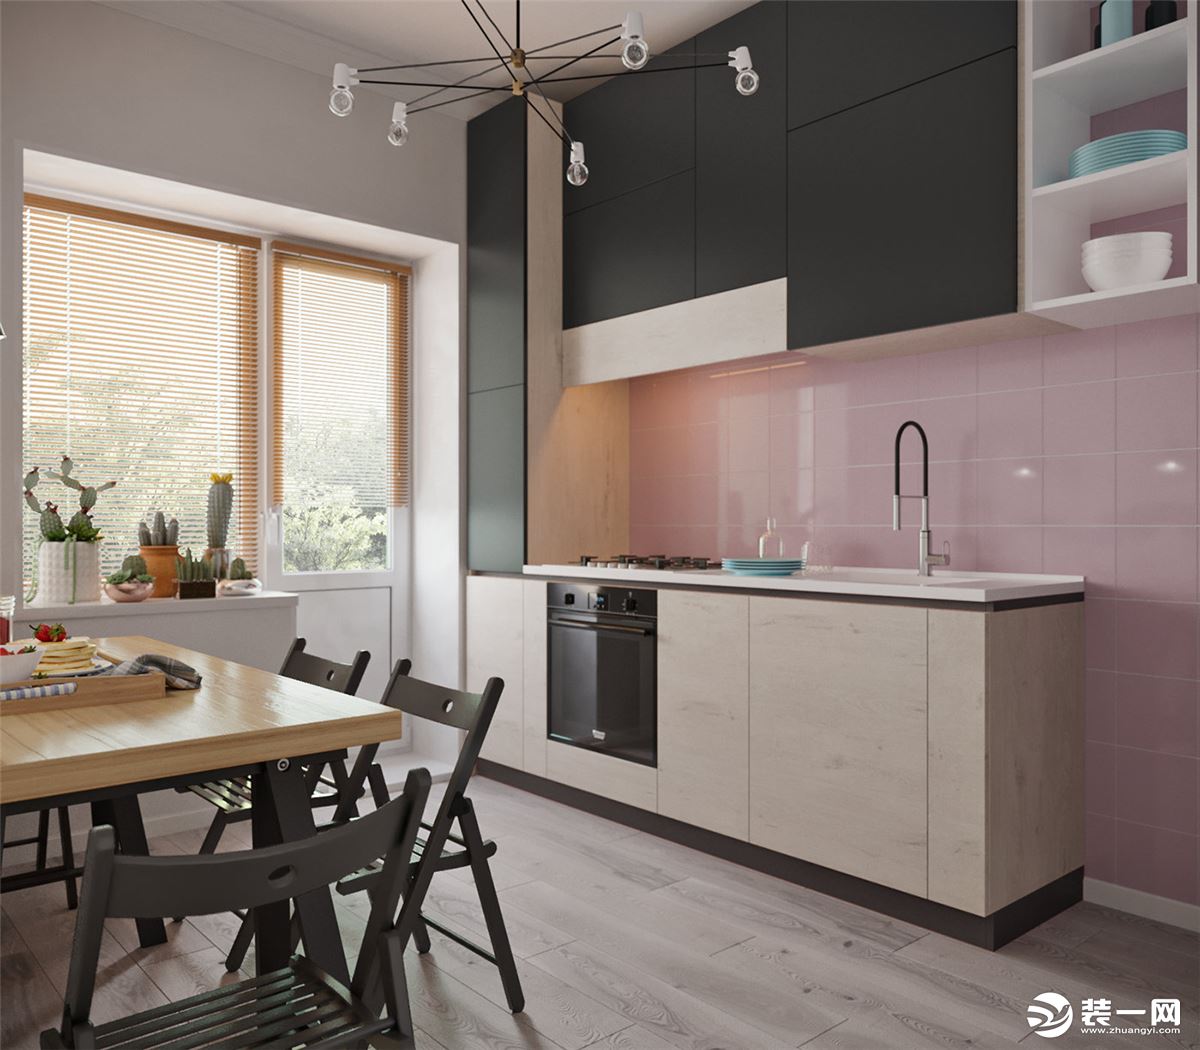 厨房在颜色上也很有创意，粉色的瓷砖视觉上干净透亮，日常生活中也非常好打理。敞开式的厨房增加的整体的通